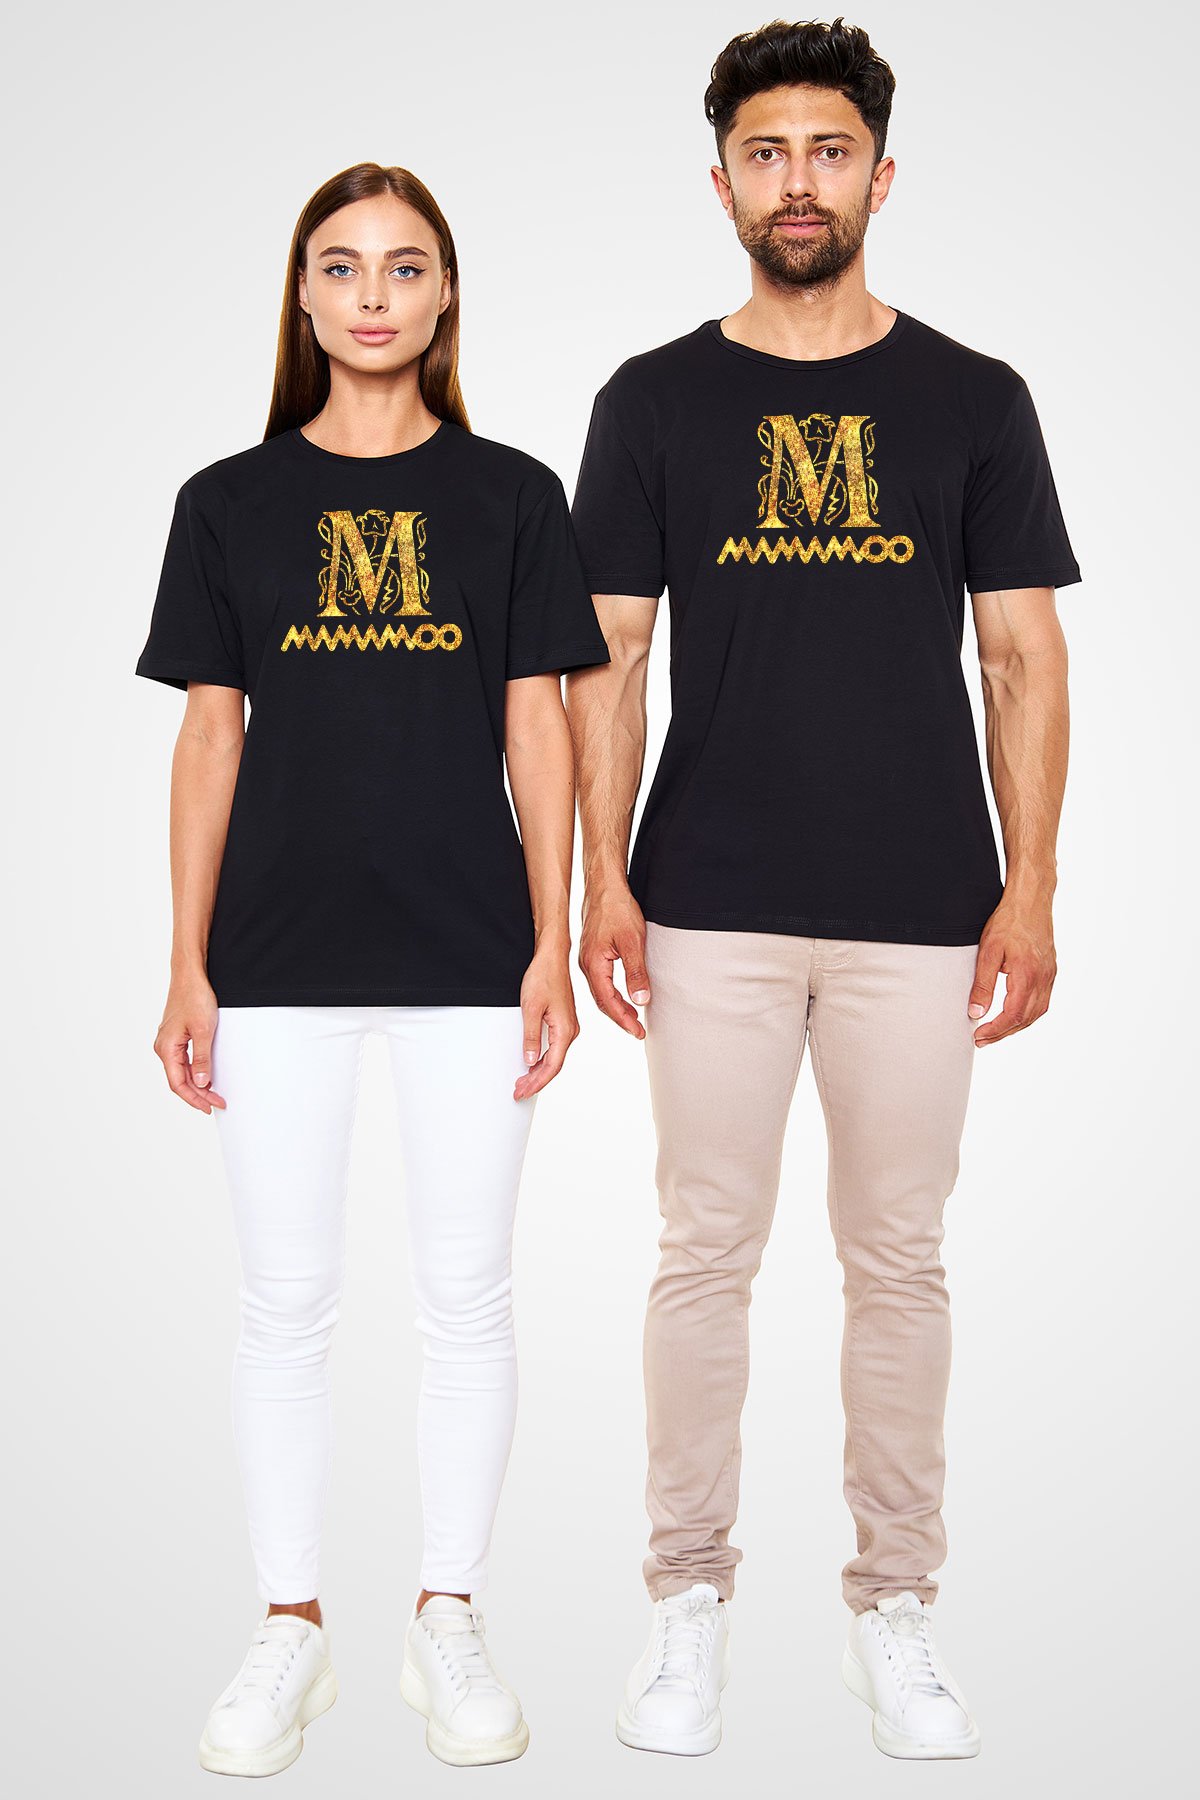 Mamamoo Siyah Unisex Tişört - T-Shirt | Tişört Fabrikası